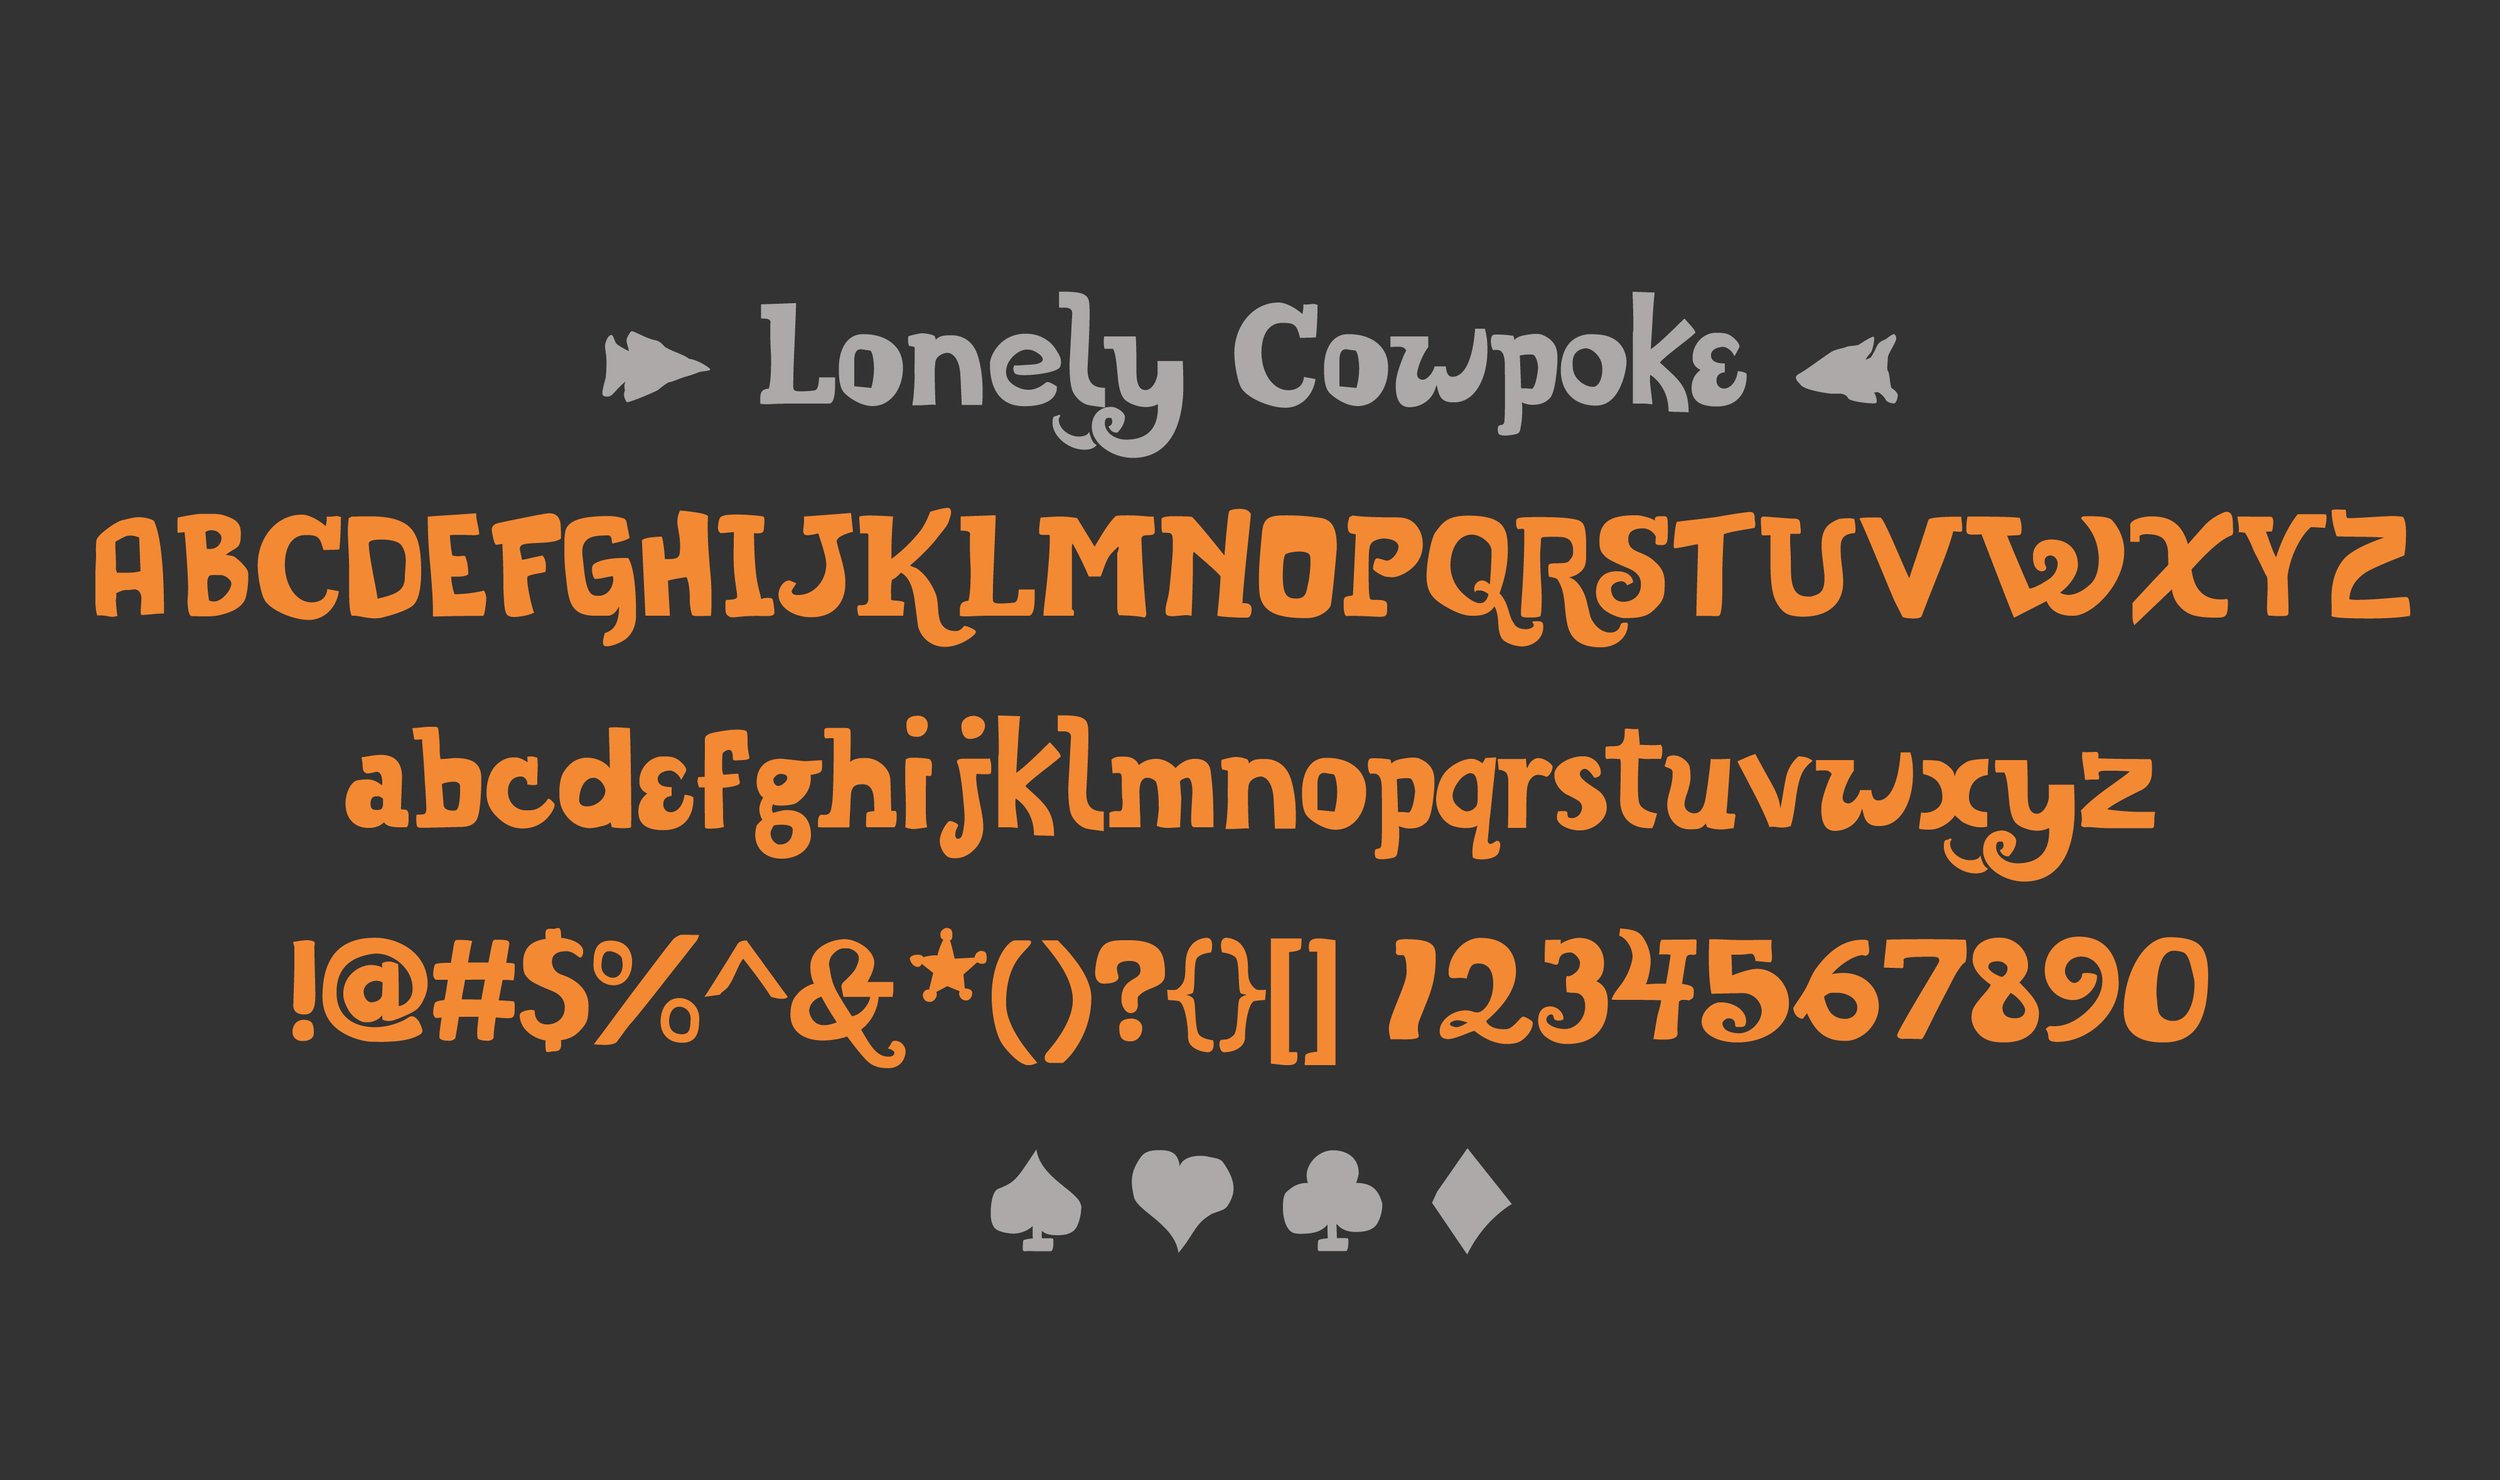 LonelyCowpoke_Artboard 4.jpg